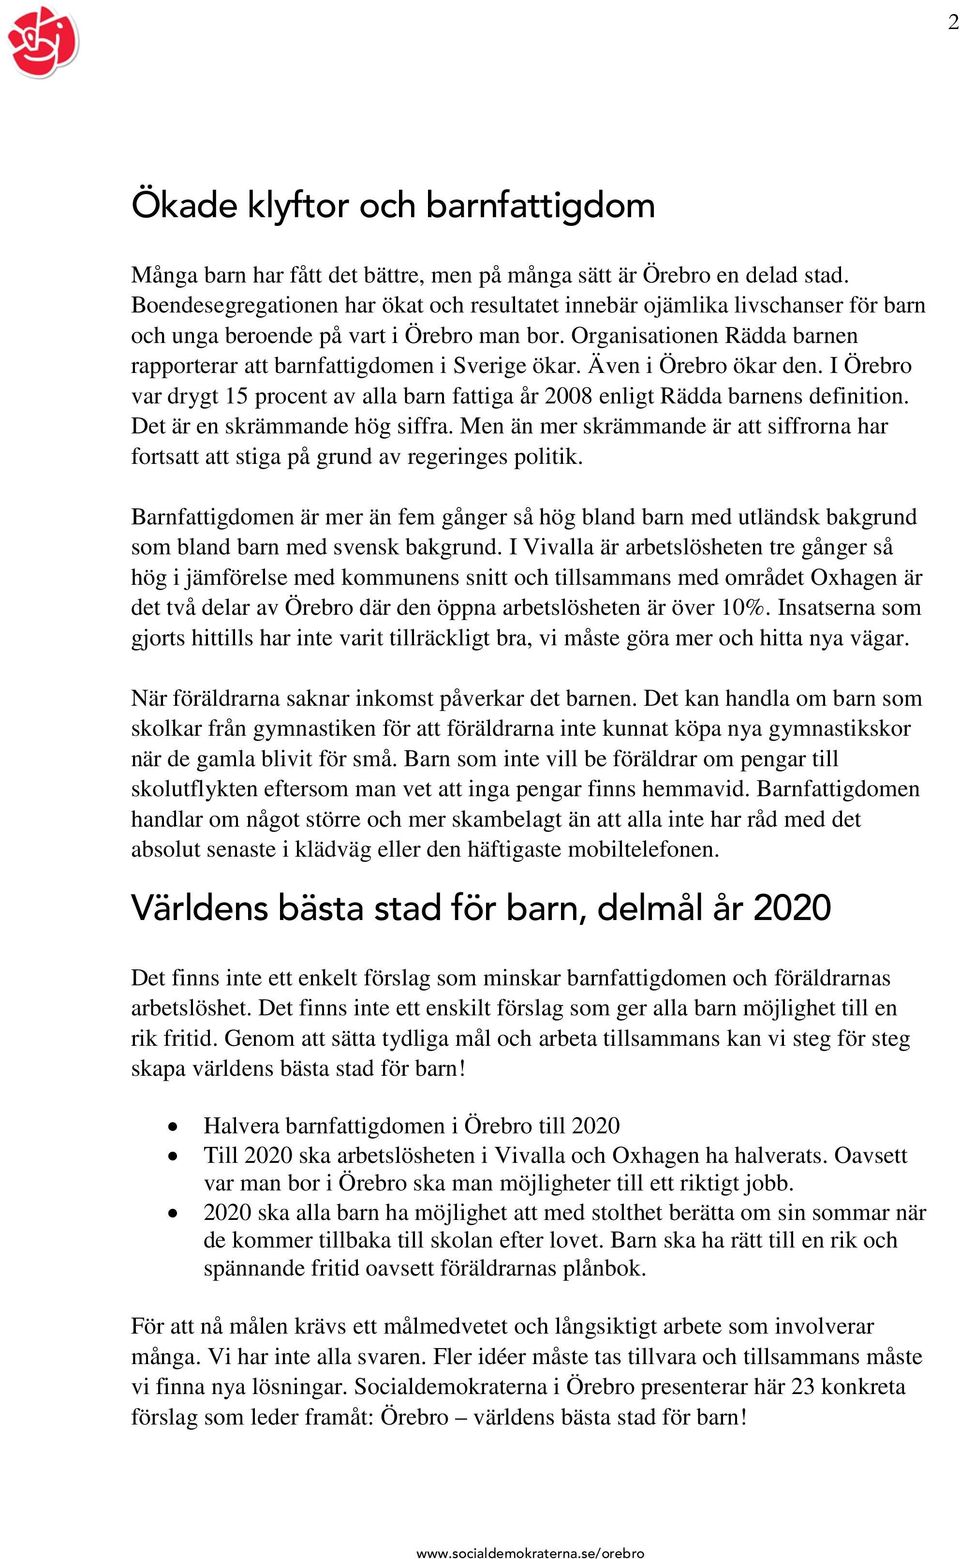 Organisationen Rädda barnen rapporterar att barnfattigdomen i Sverige ökar. Även i Örebro ökar den. I Örebro var drygt 15 procent av alla barn fattiga år 2008 enligt Rädda barnens definition.